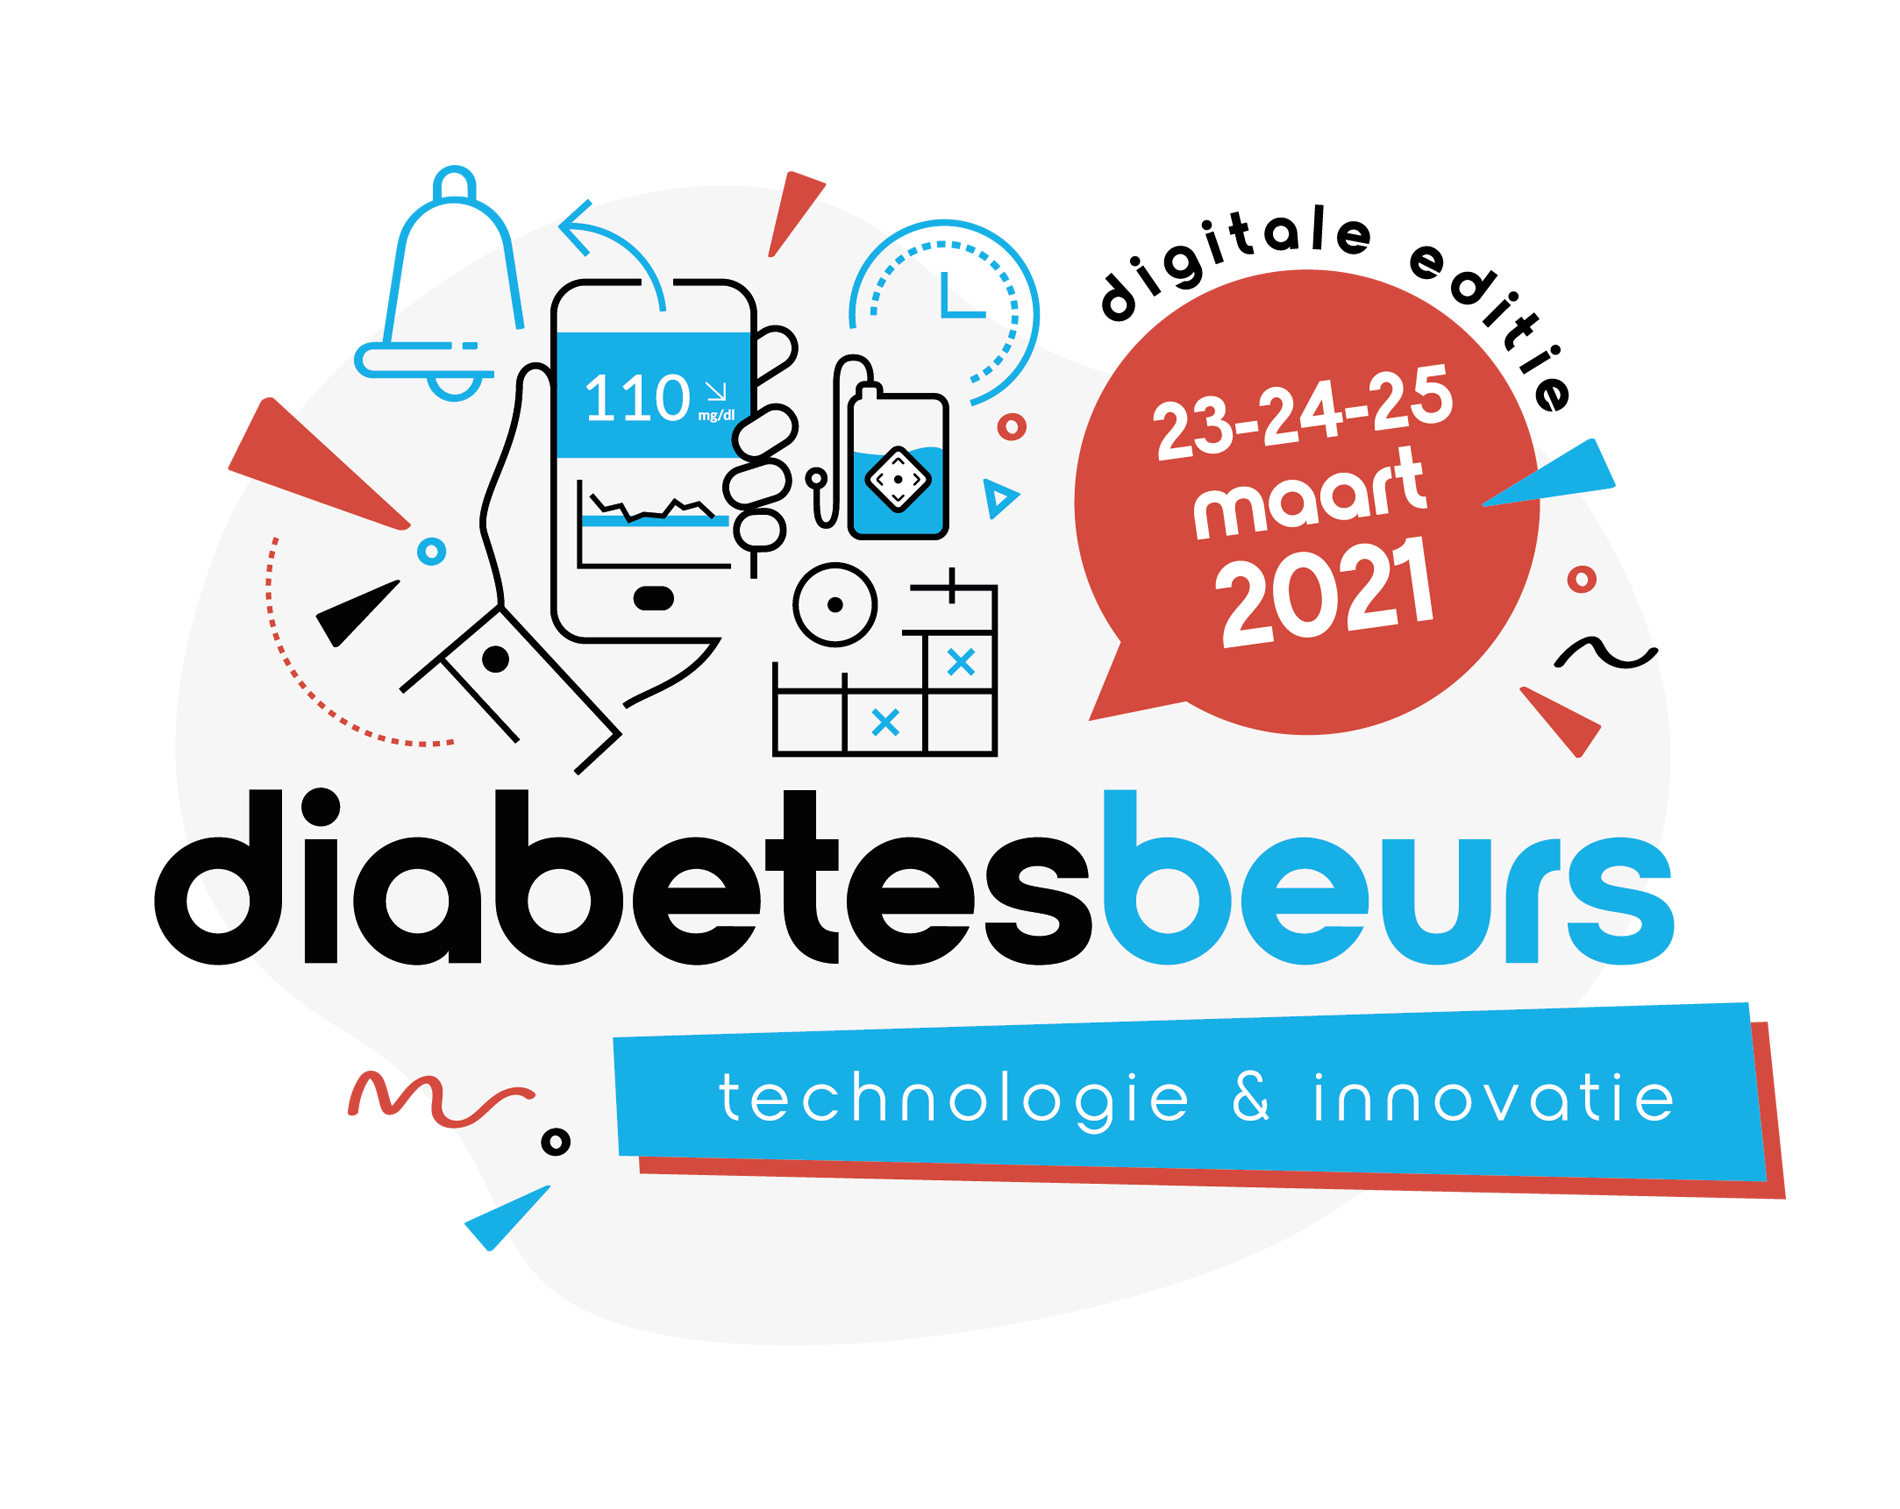 Diabetesbeurs - 23-24-25 maart 2021